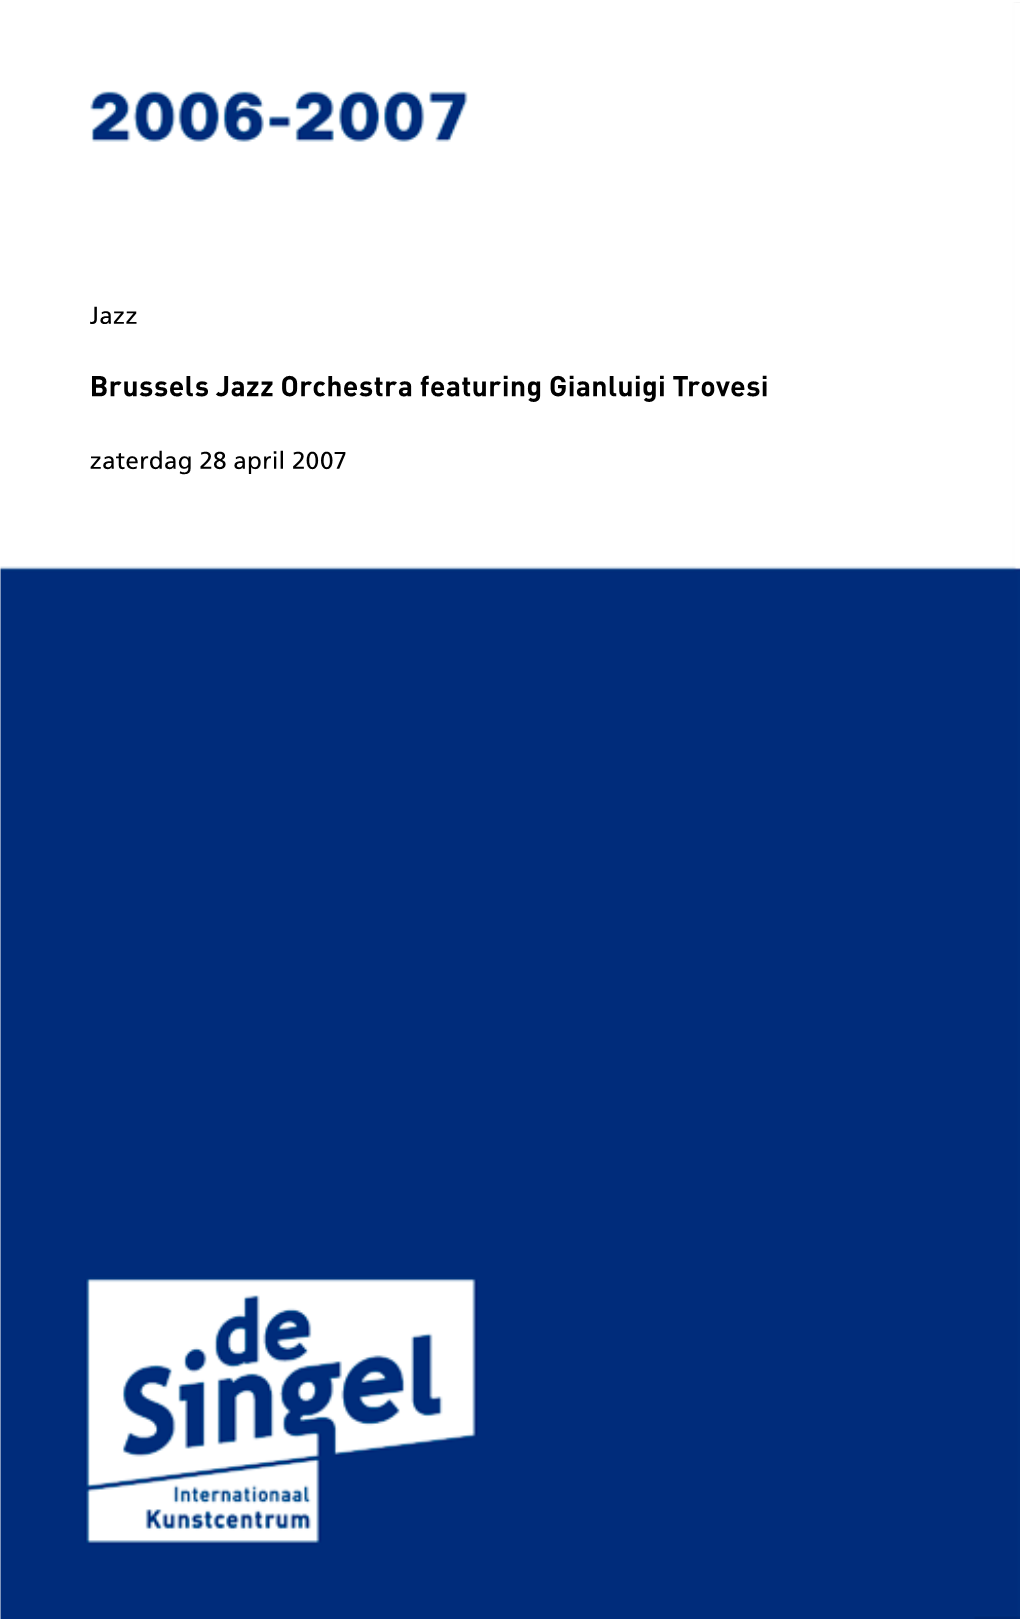 Brussels Jazz Orchestra Featuring Gianluigi Trovesi Zaterdag 28 April 2007 Jazz